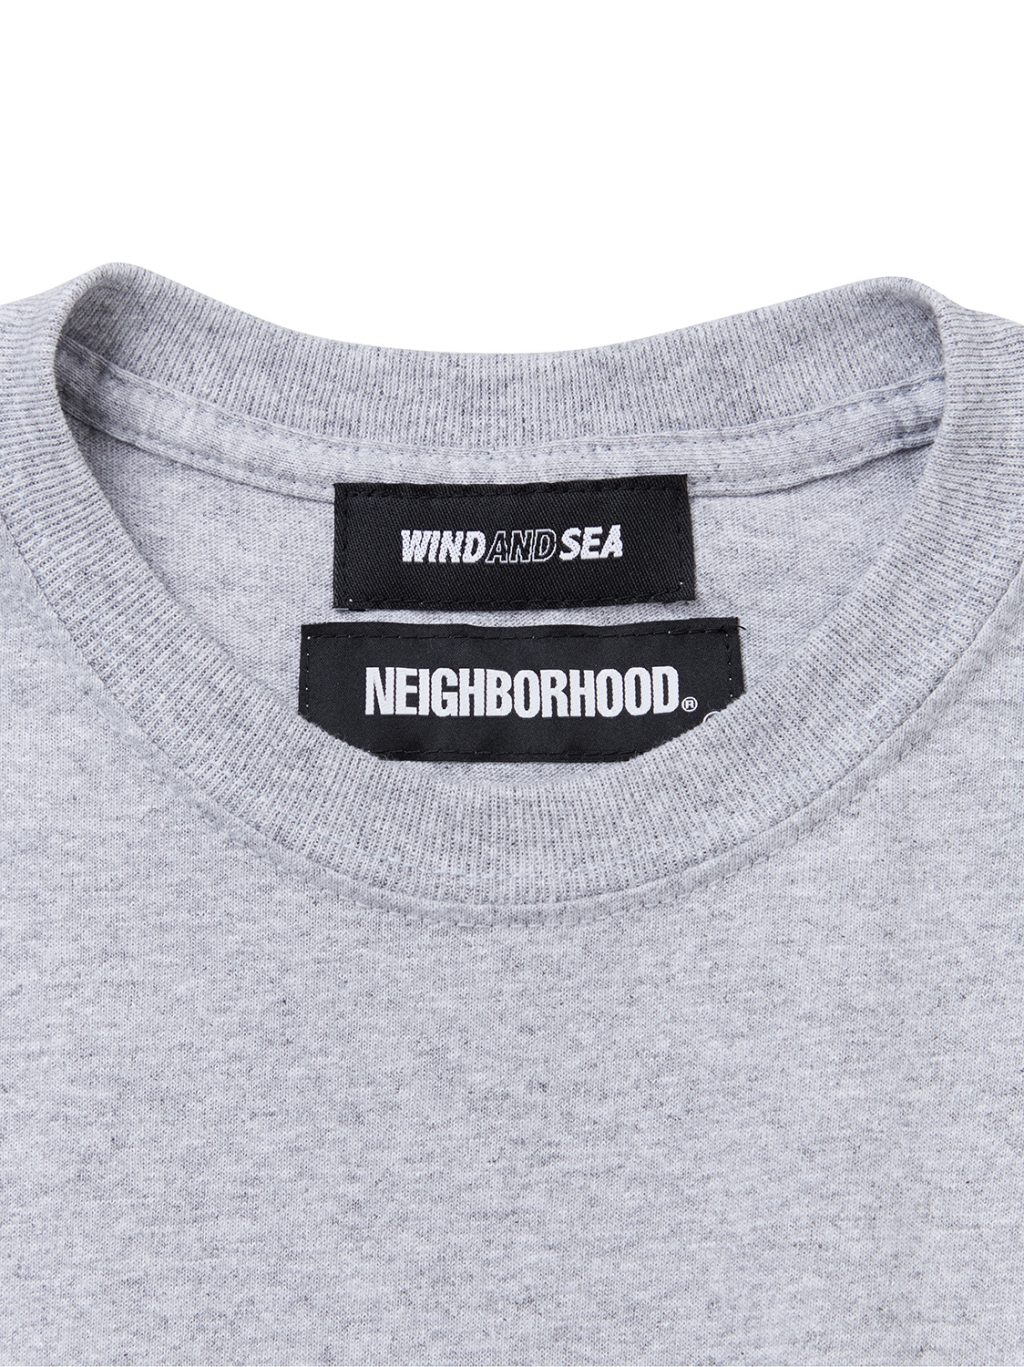 NEIGHBORHOOD × WIND AND SEAの新作コラボレーションアイテムが6月5日に発売